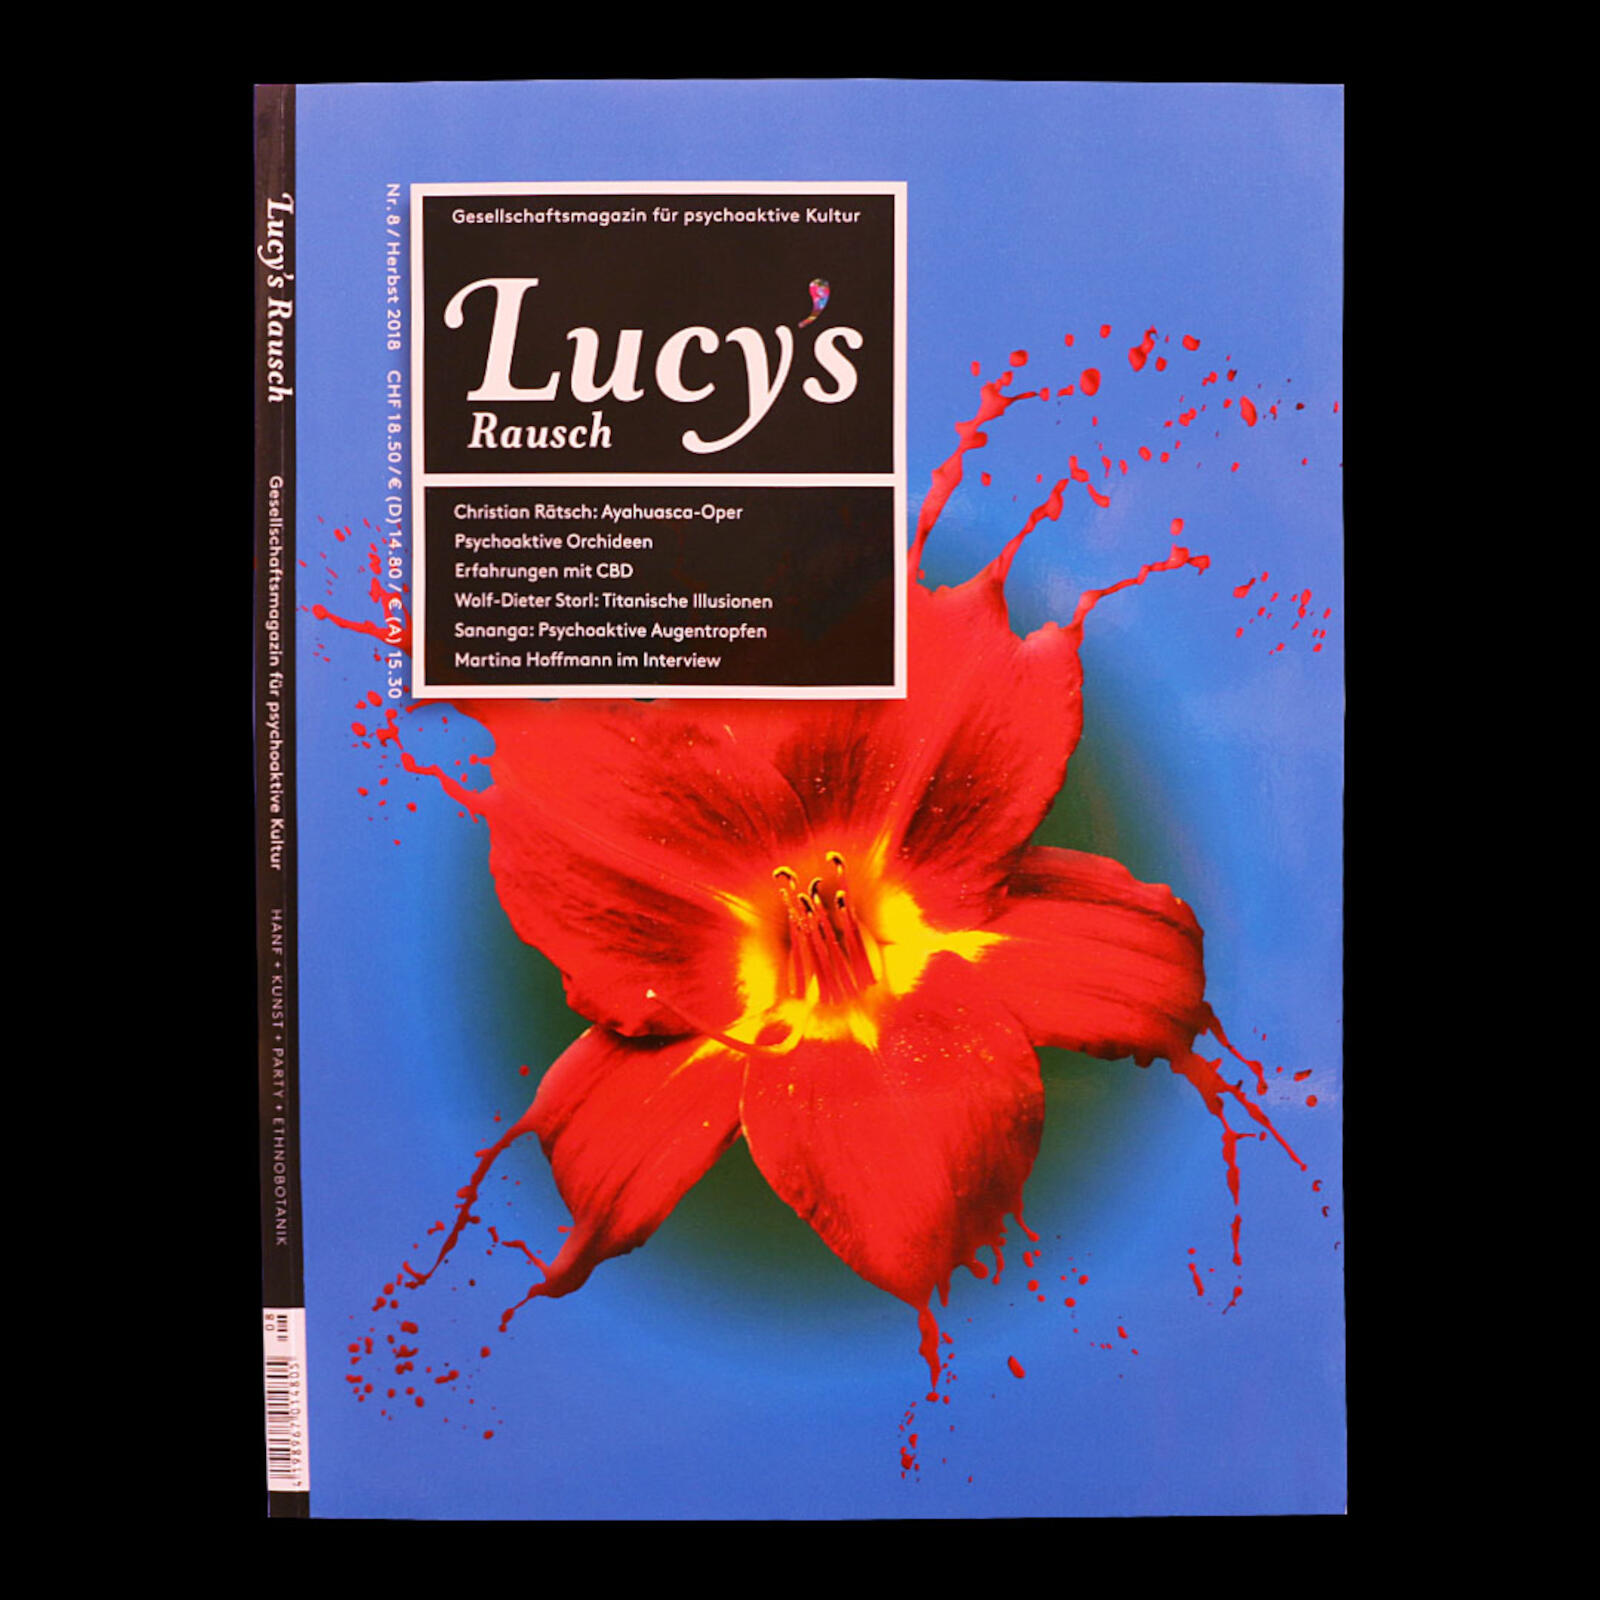 Lucy's Rausch | Volume 8